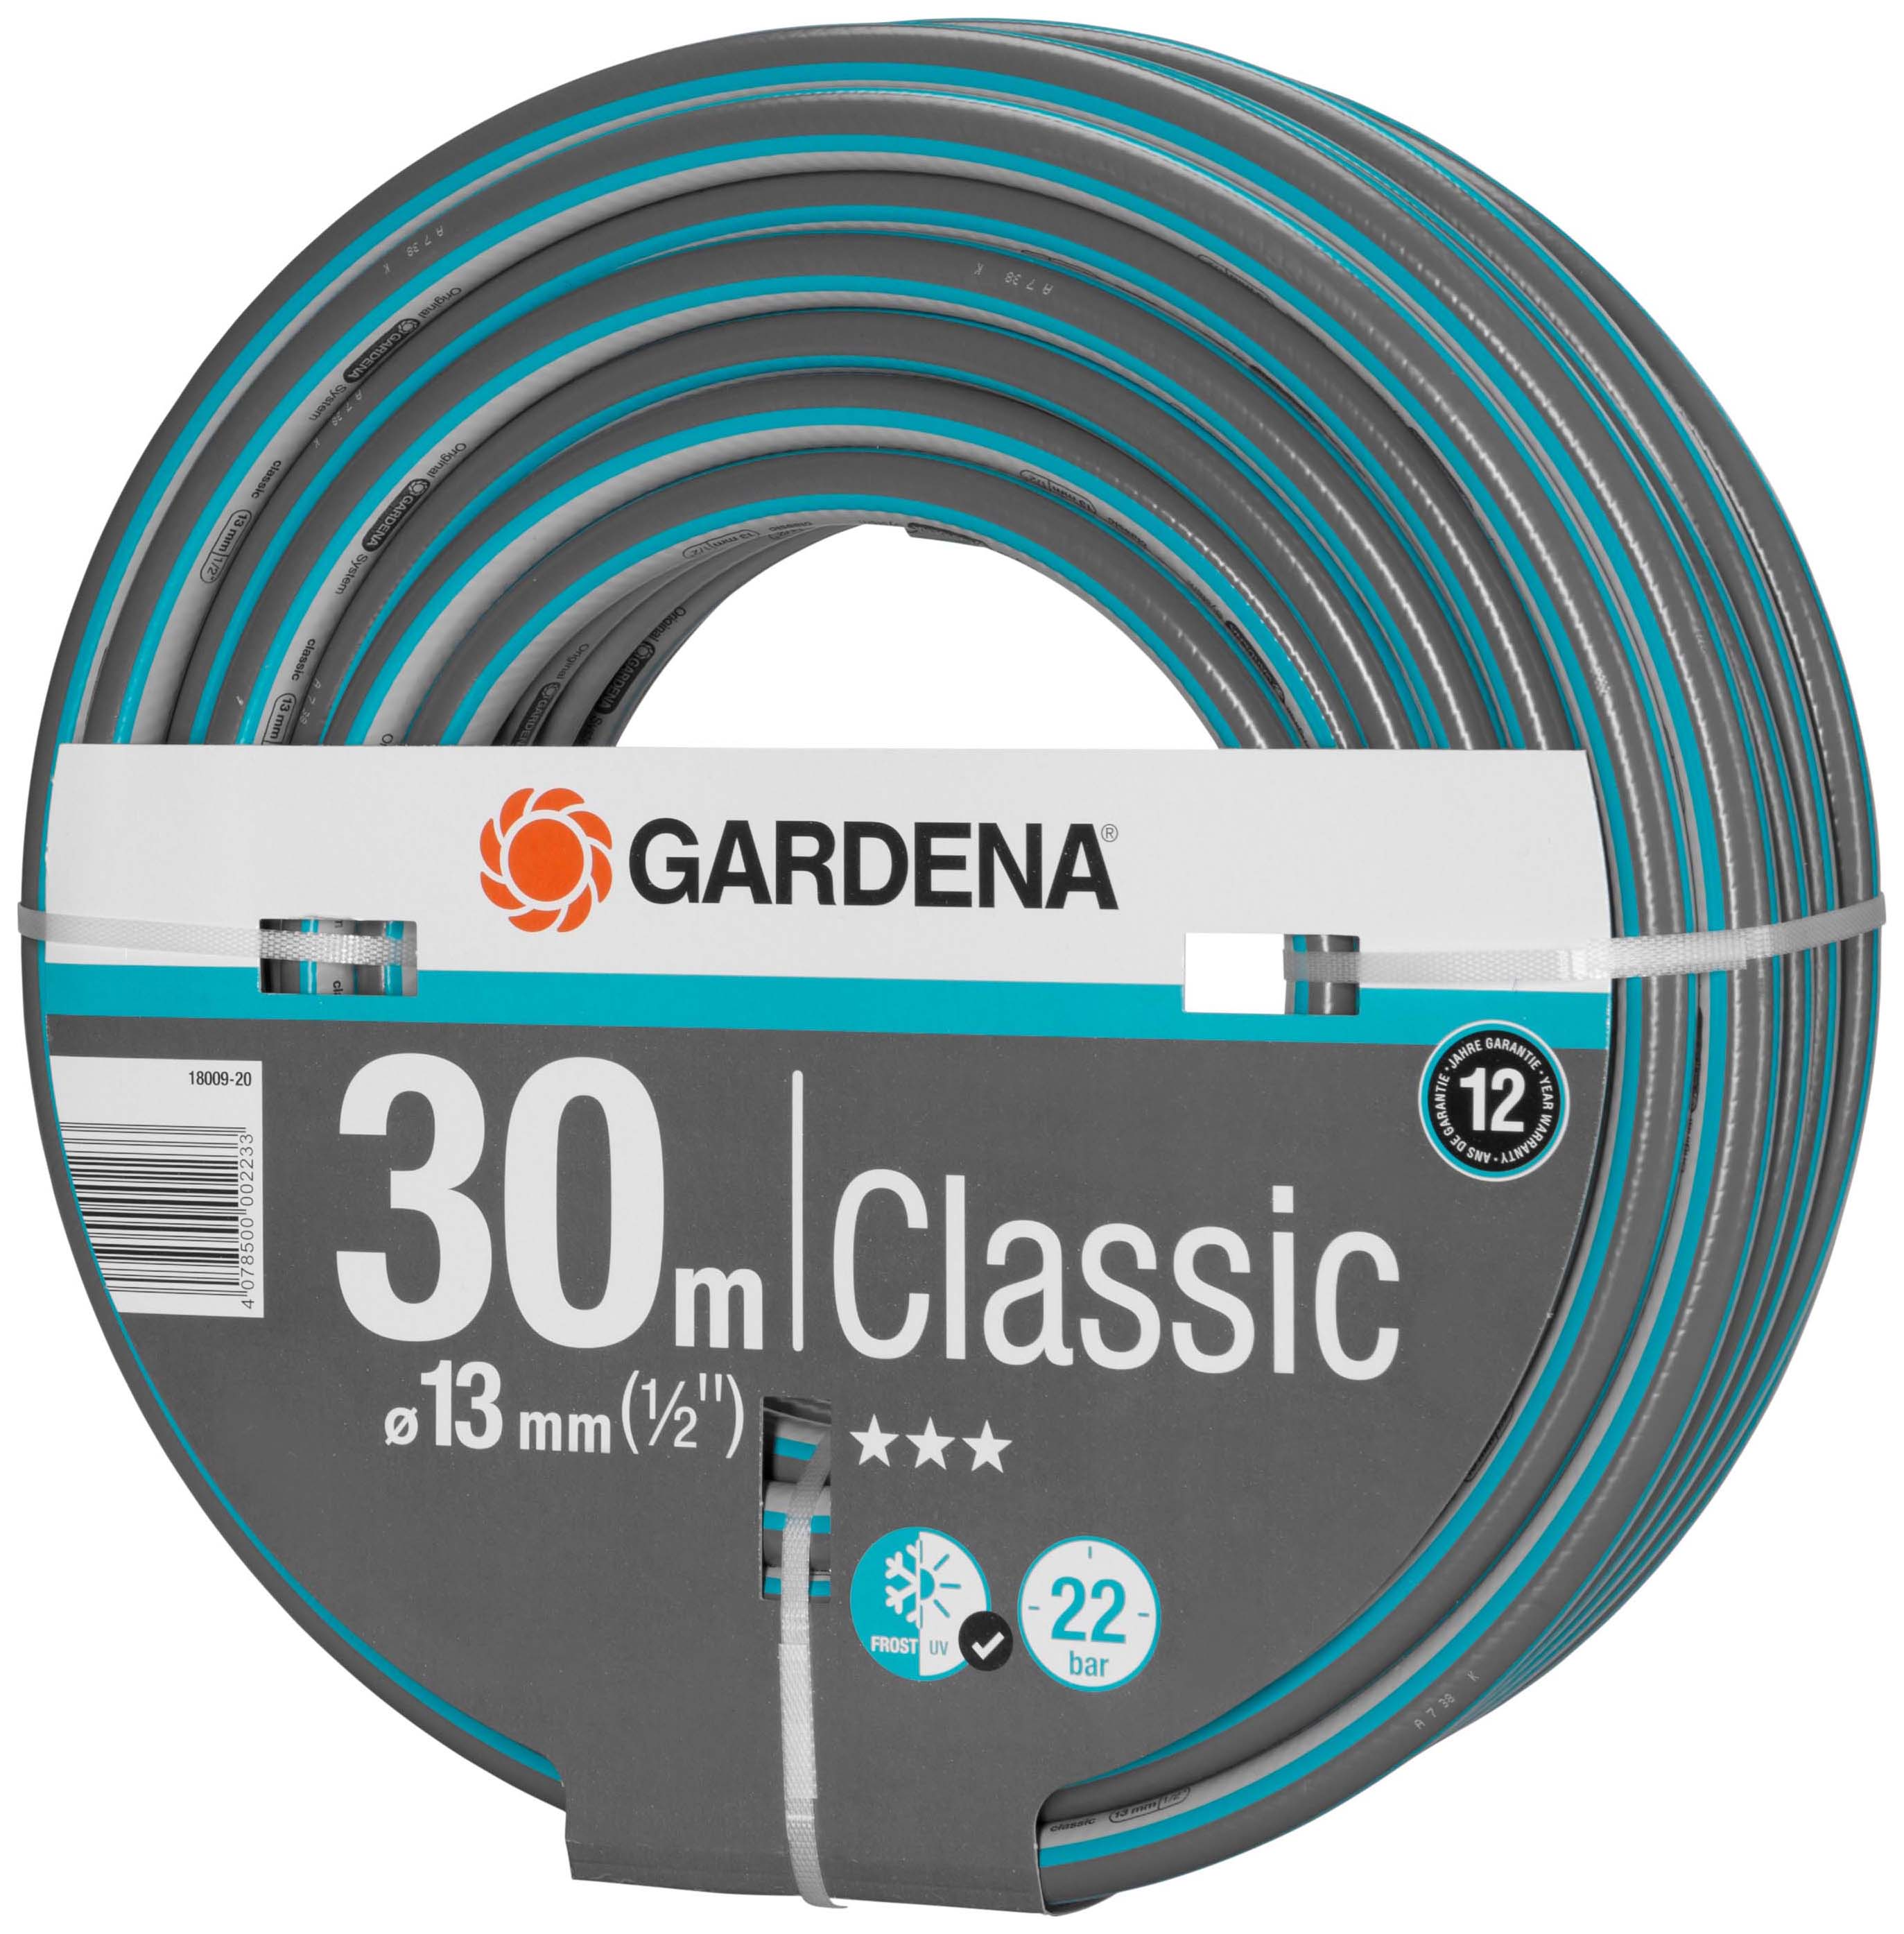 Image of Gardena Classic Hose - 30m